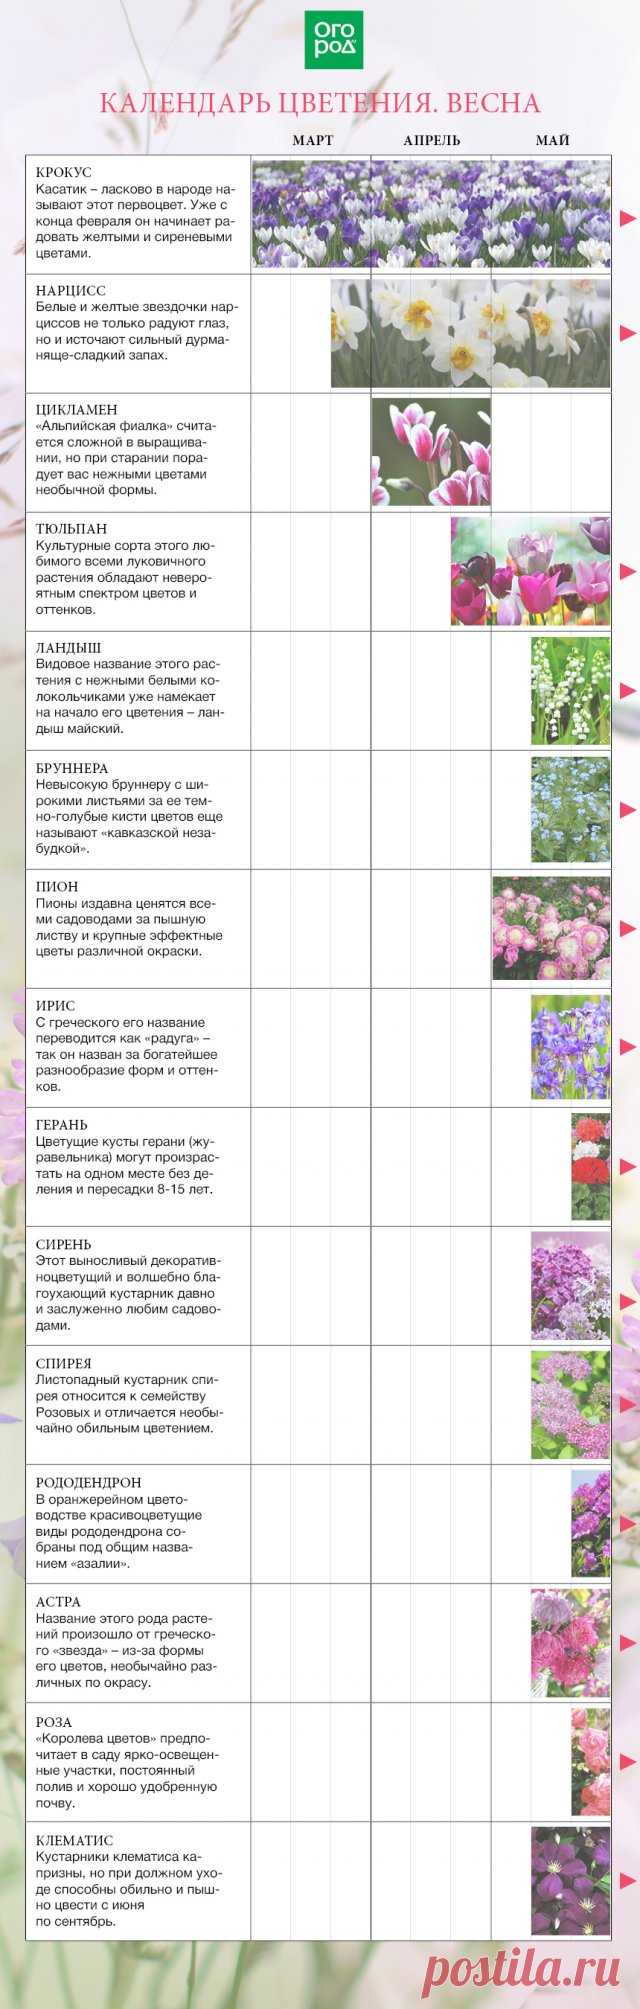 Календарь цветения многолетников по месяцам с весны до осени | Календарь работ (Огород.ru)